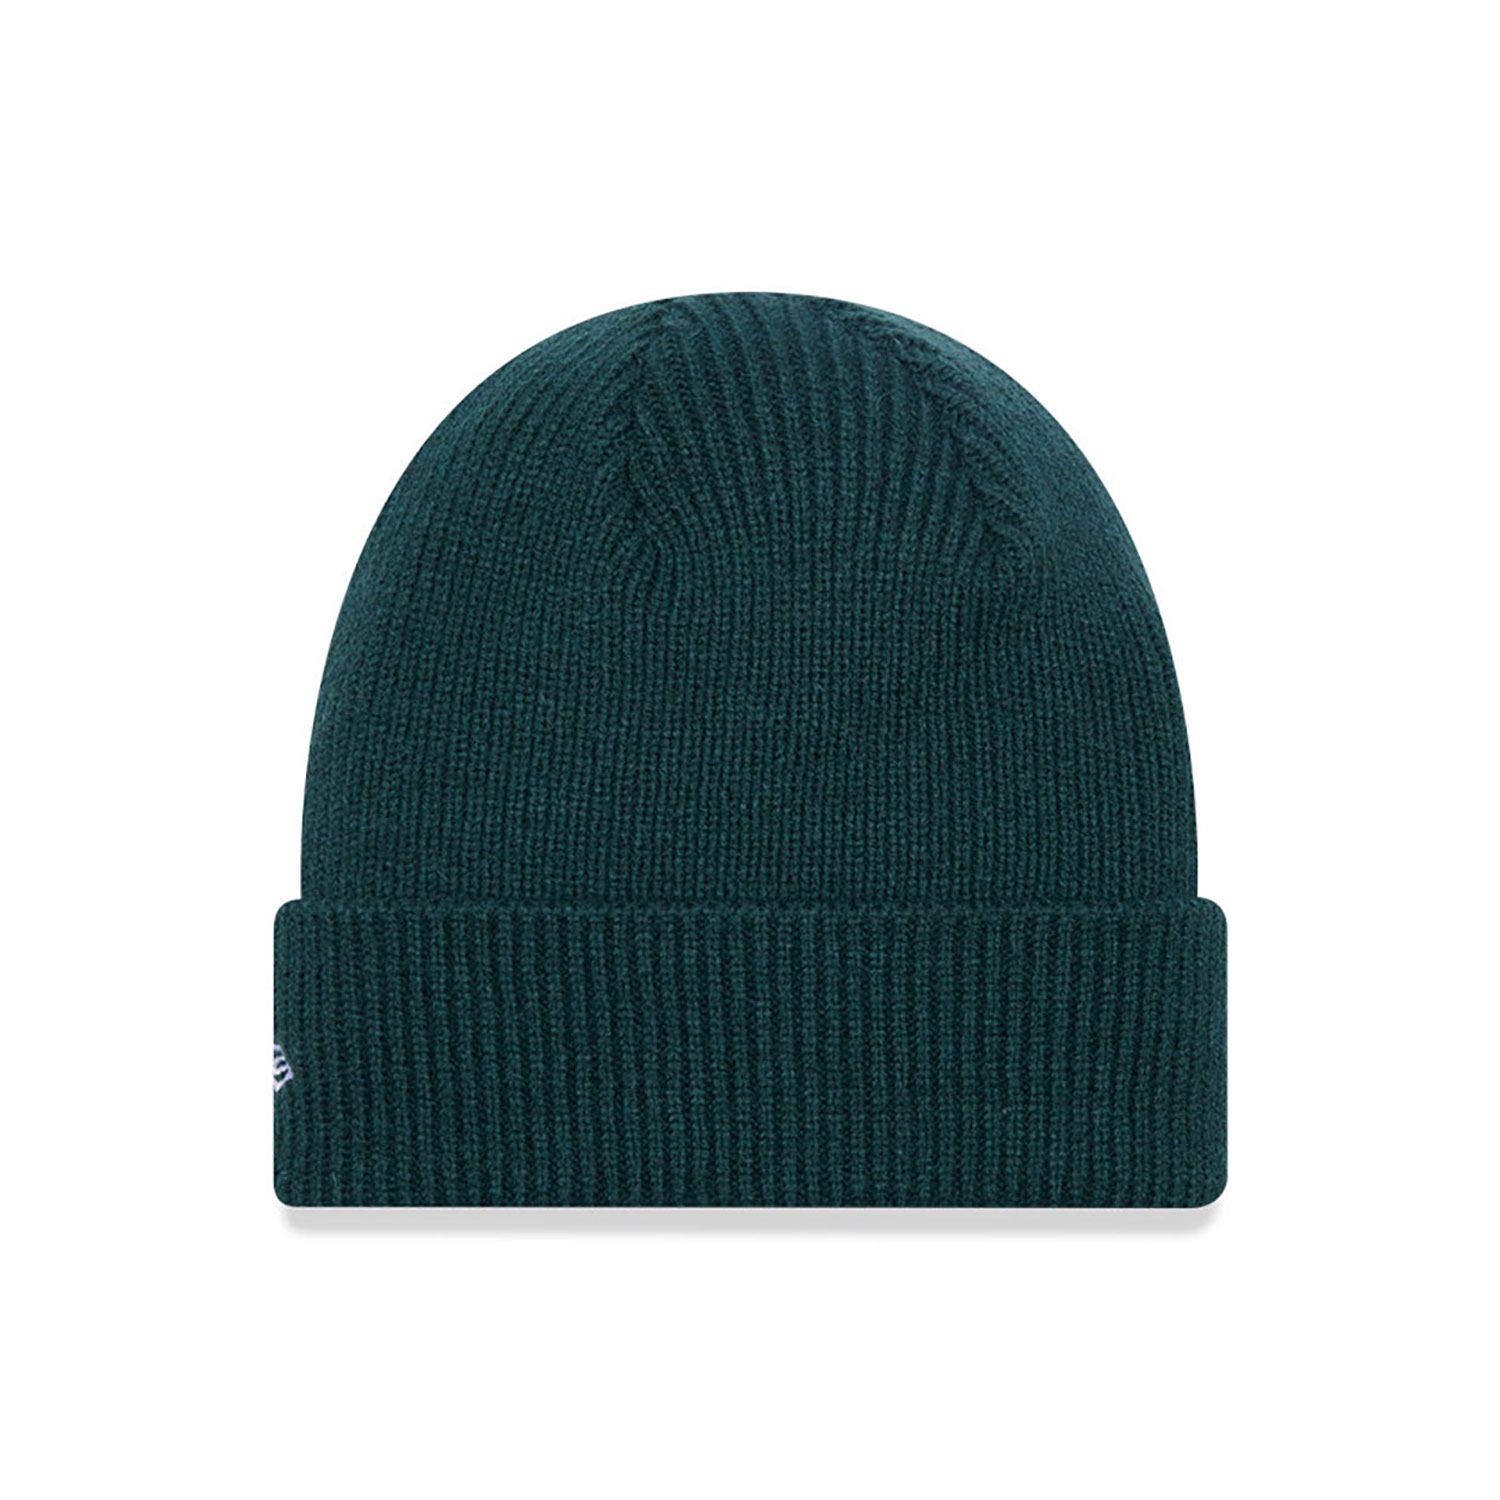 New Era Wool Green Cuff Knit Beanie Hat